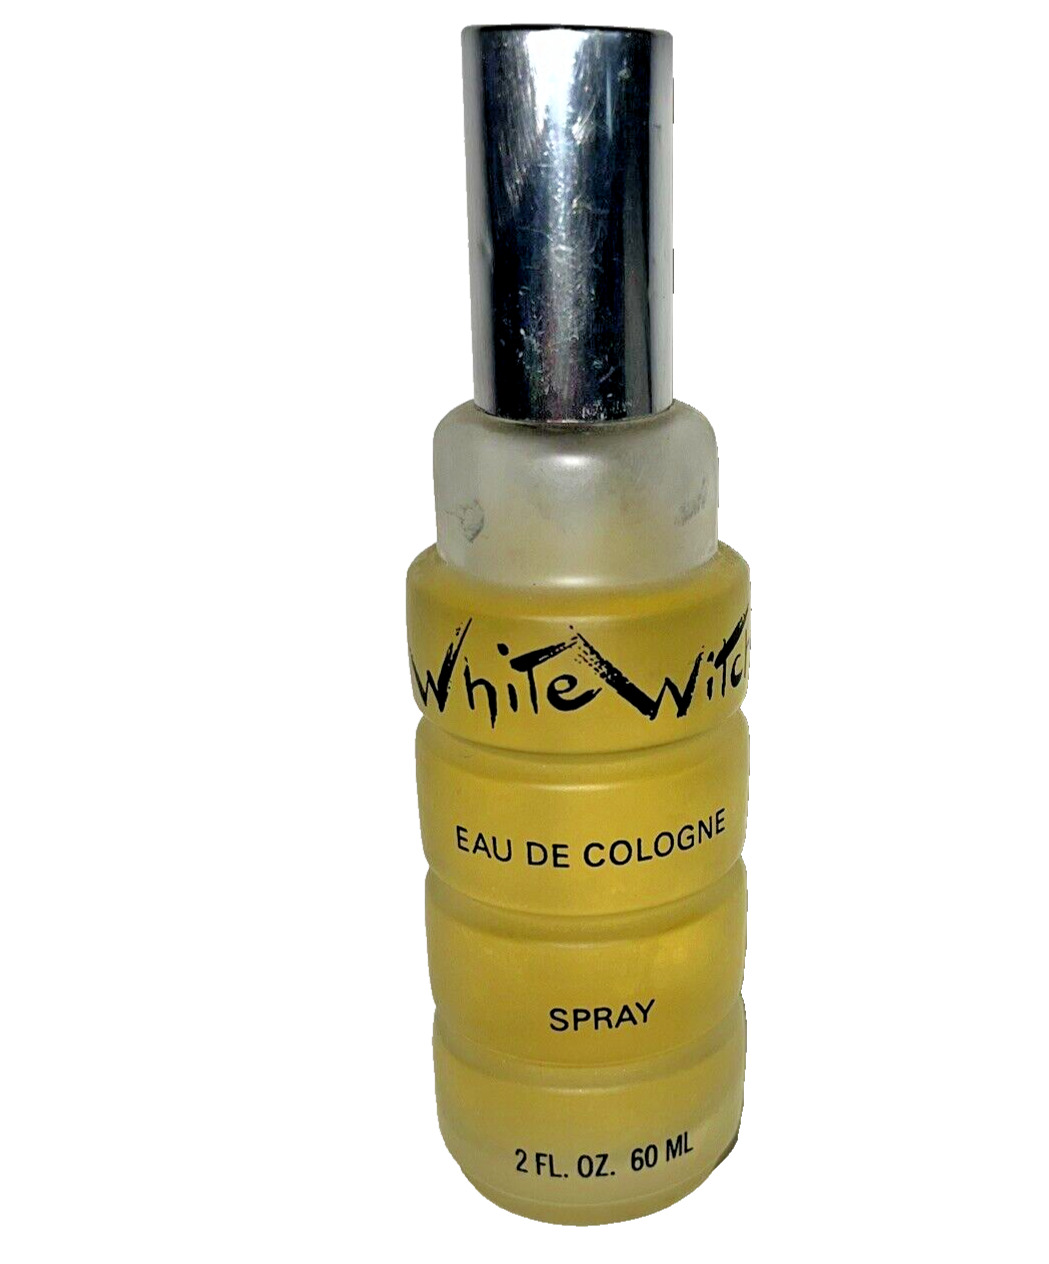 VTG White Witch Perfume Jamaica 60ml /2oz Eau De Cologne SPRAY